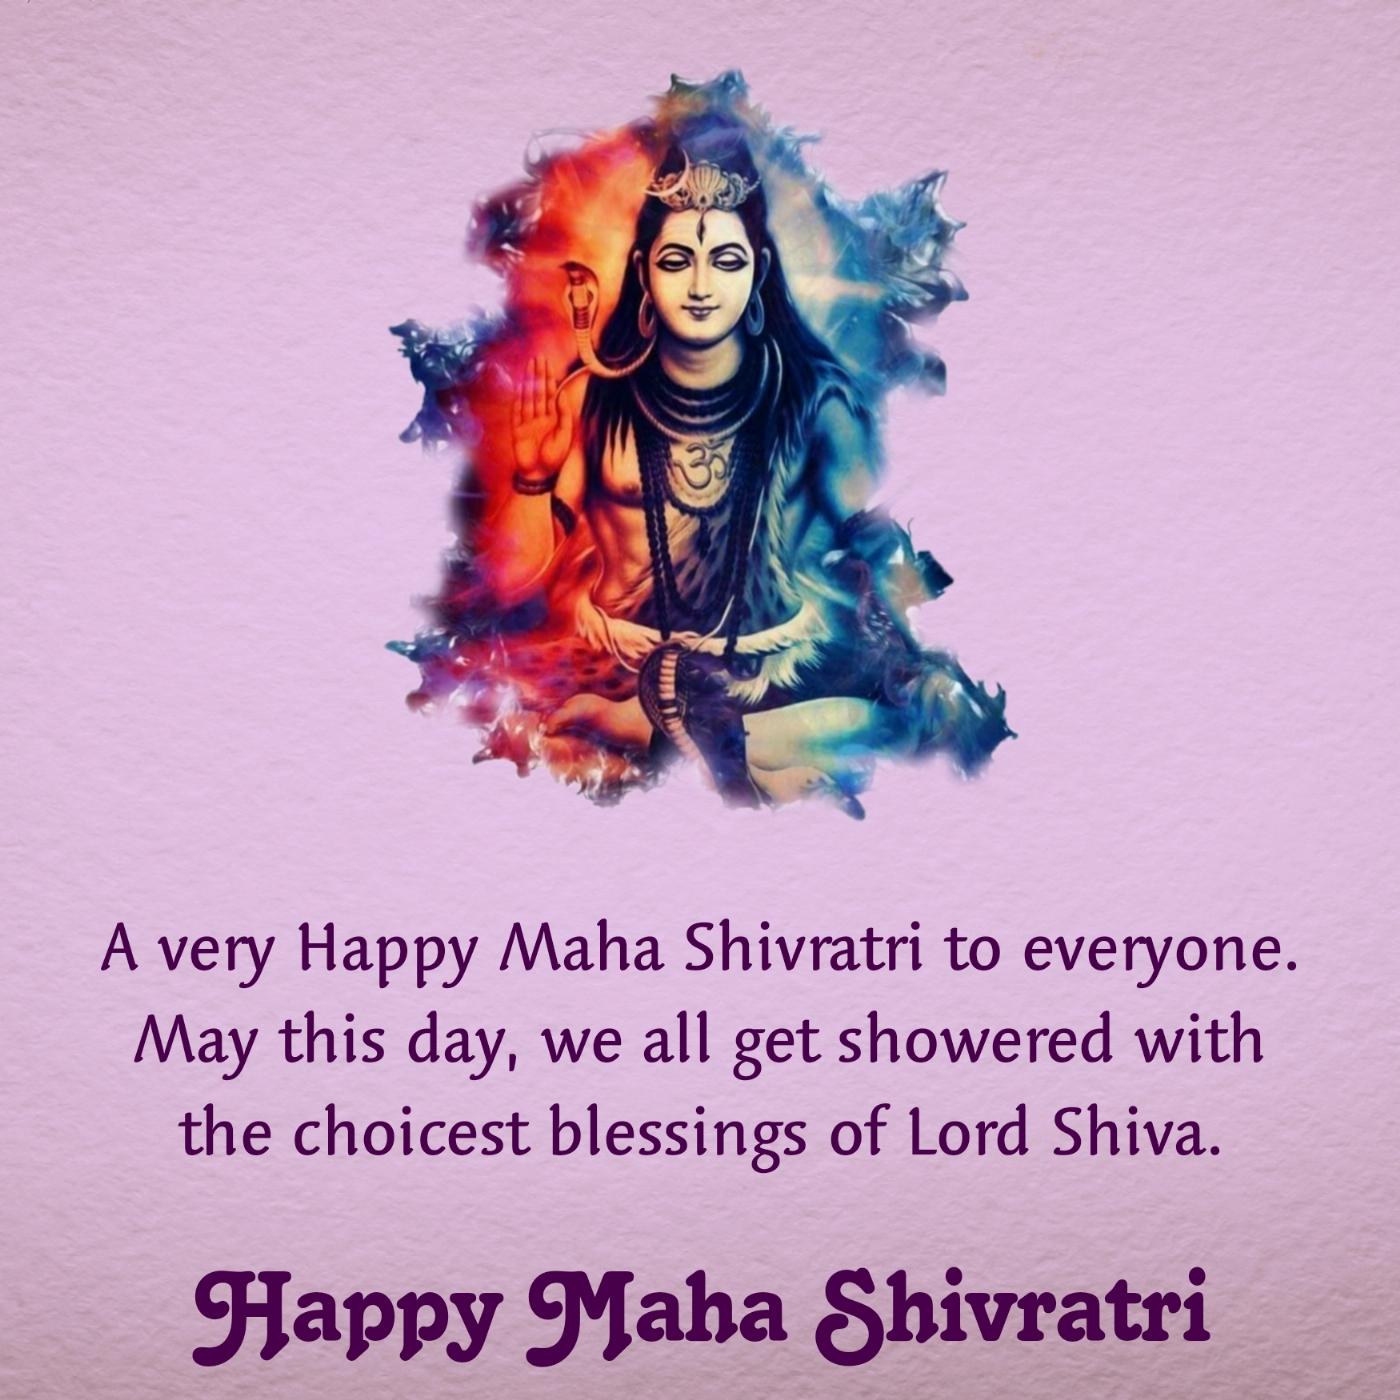 A very Happy Maha Shivratri to everyone